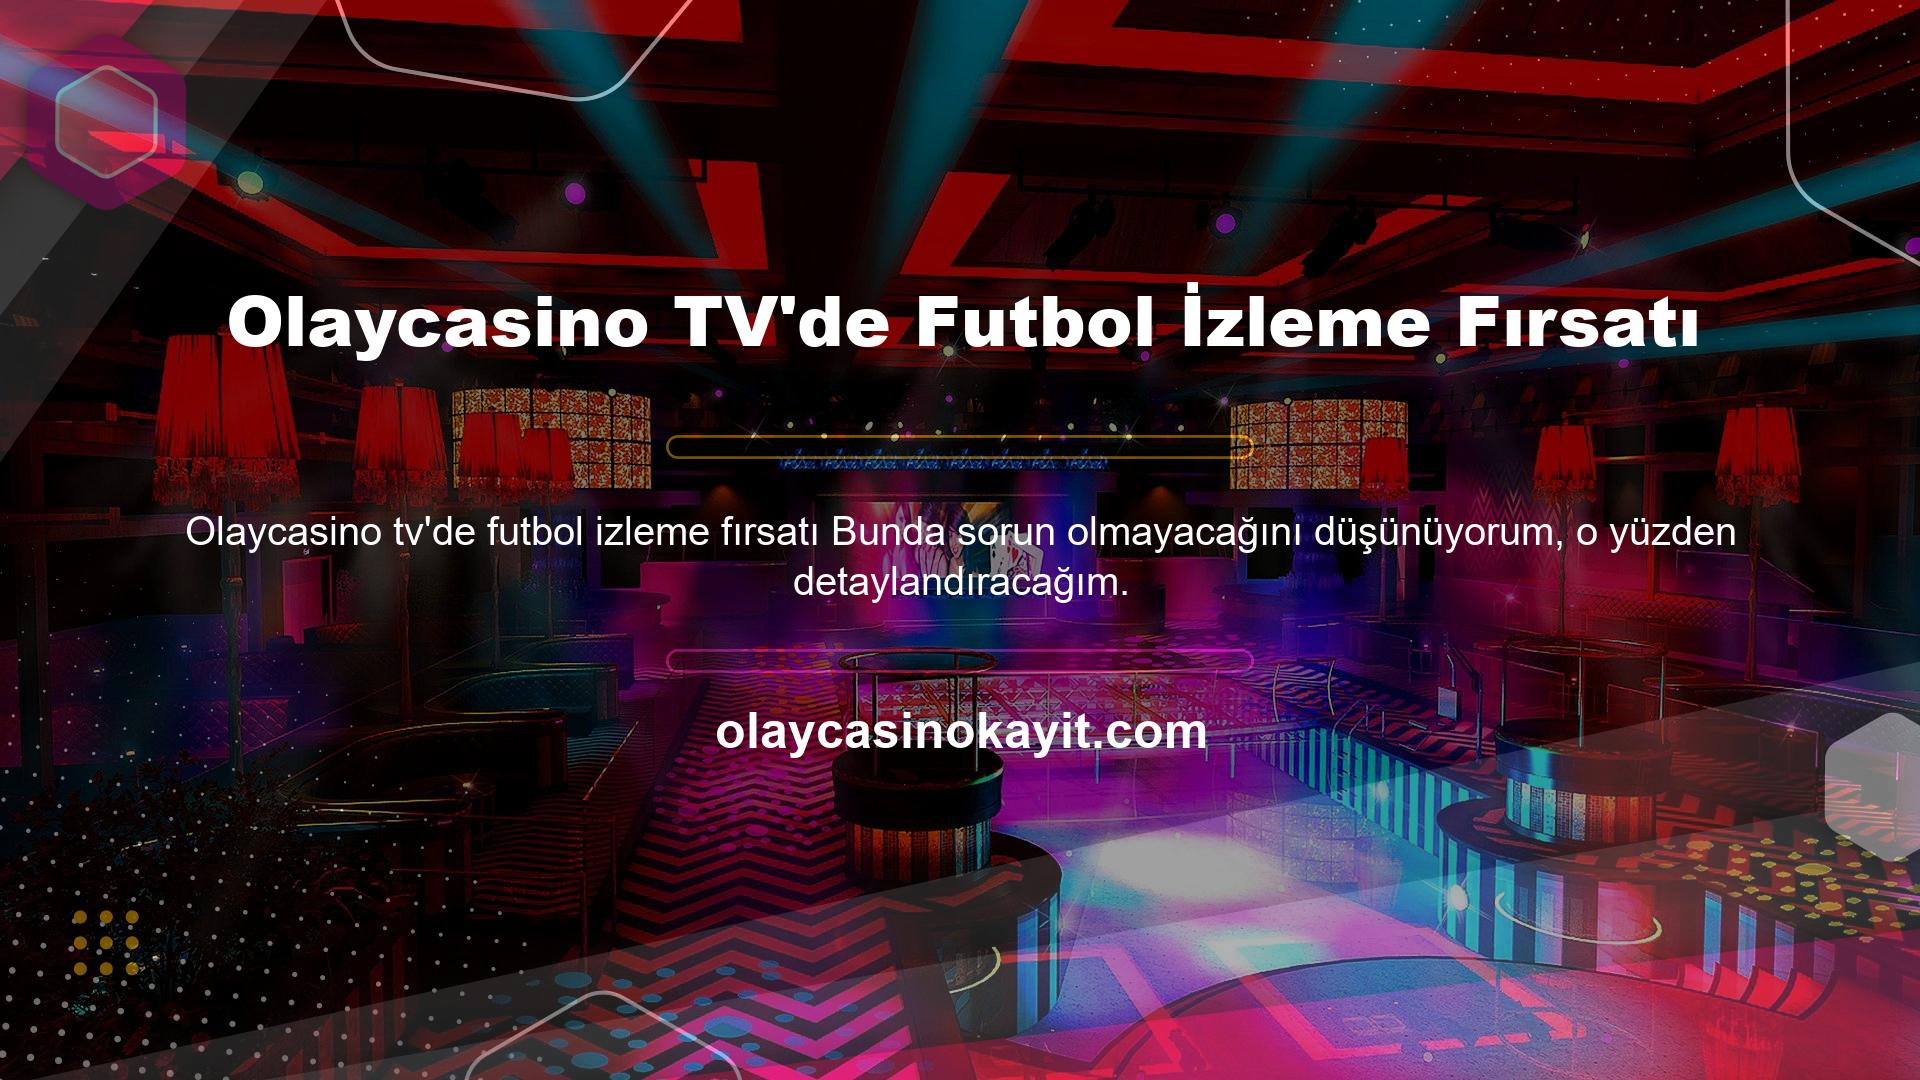 Olaycasino TV'de Futbol İzleme Fırsatı